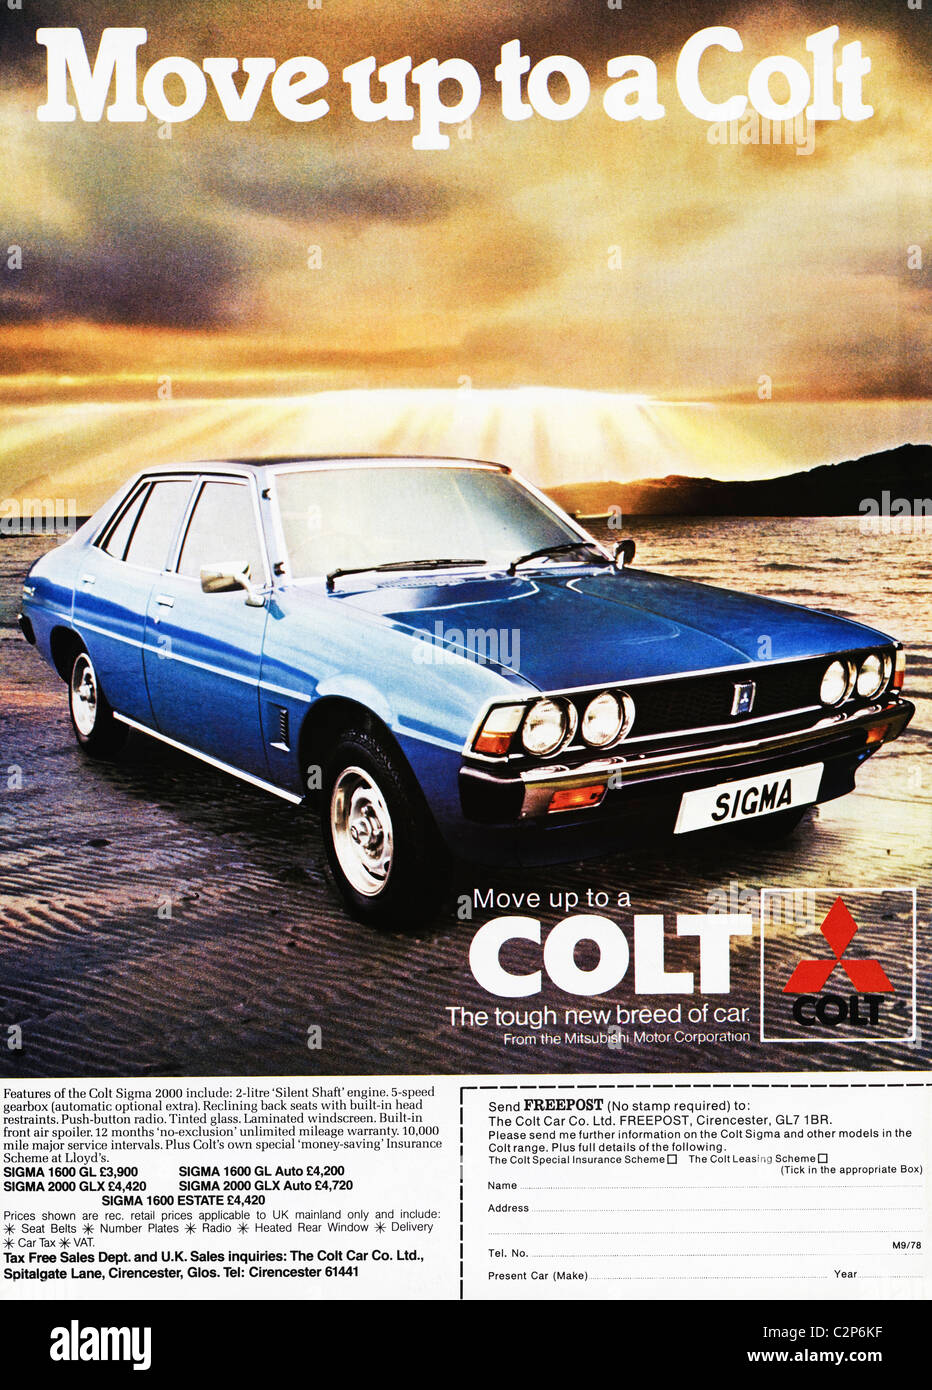 Werbung für COLT Autos im Männer-Magazin ca. 1978 Stockfoto